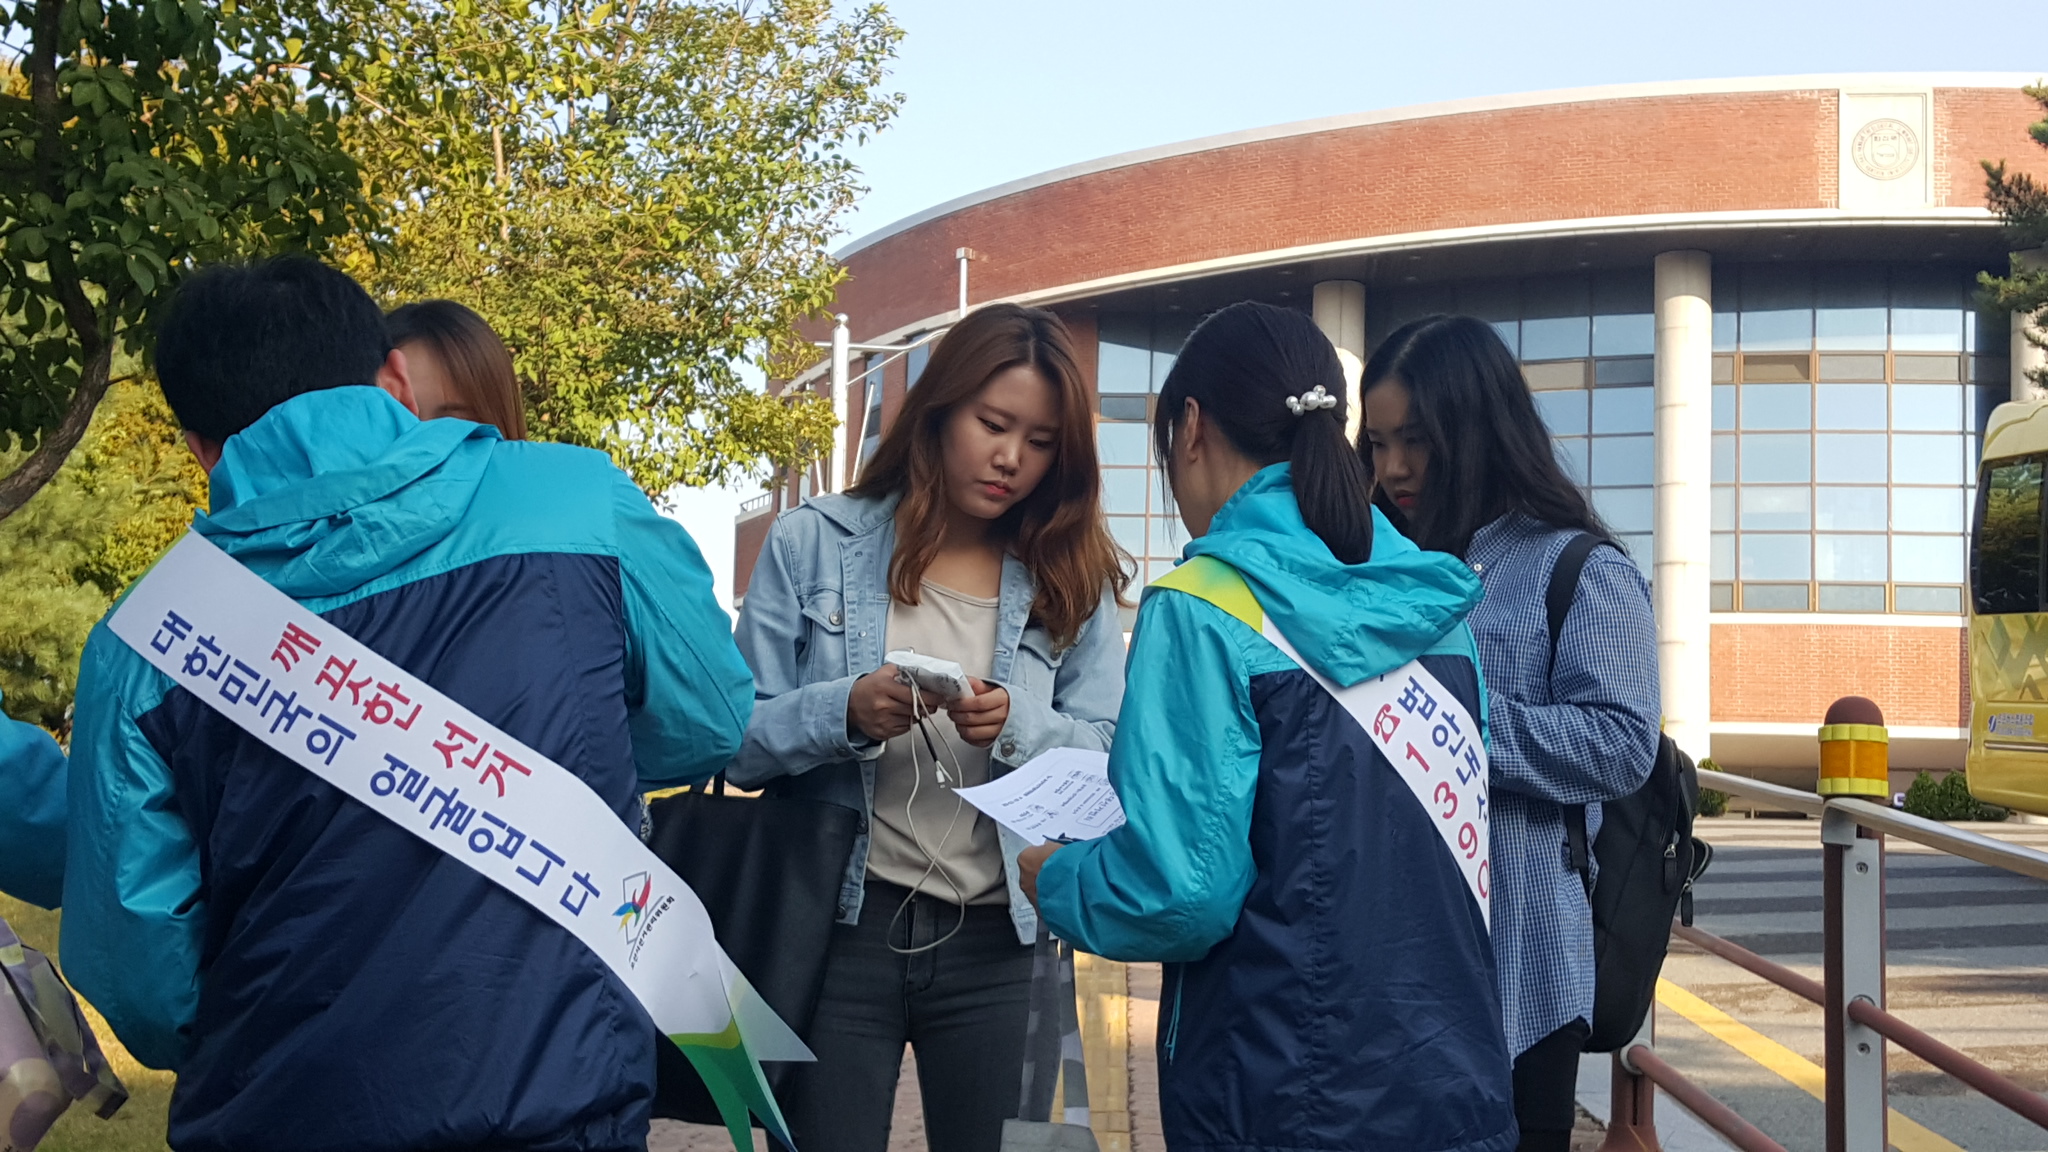 오산시선관위 직원들이 한신대학교 학생들에게 홍보용품을 나눠주며 내년에 있을 제20대 국회의원선거의 투표참여를 당부하는 모습